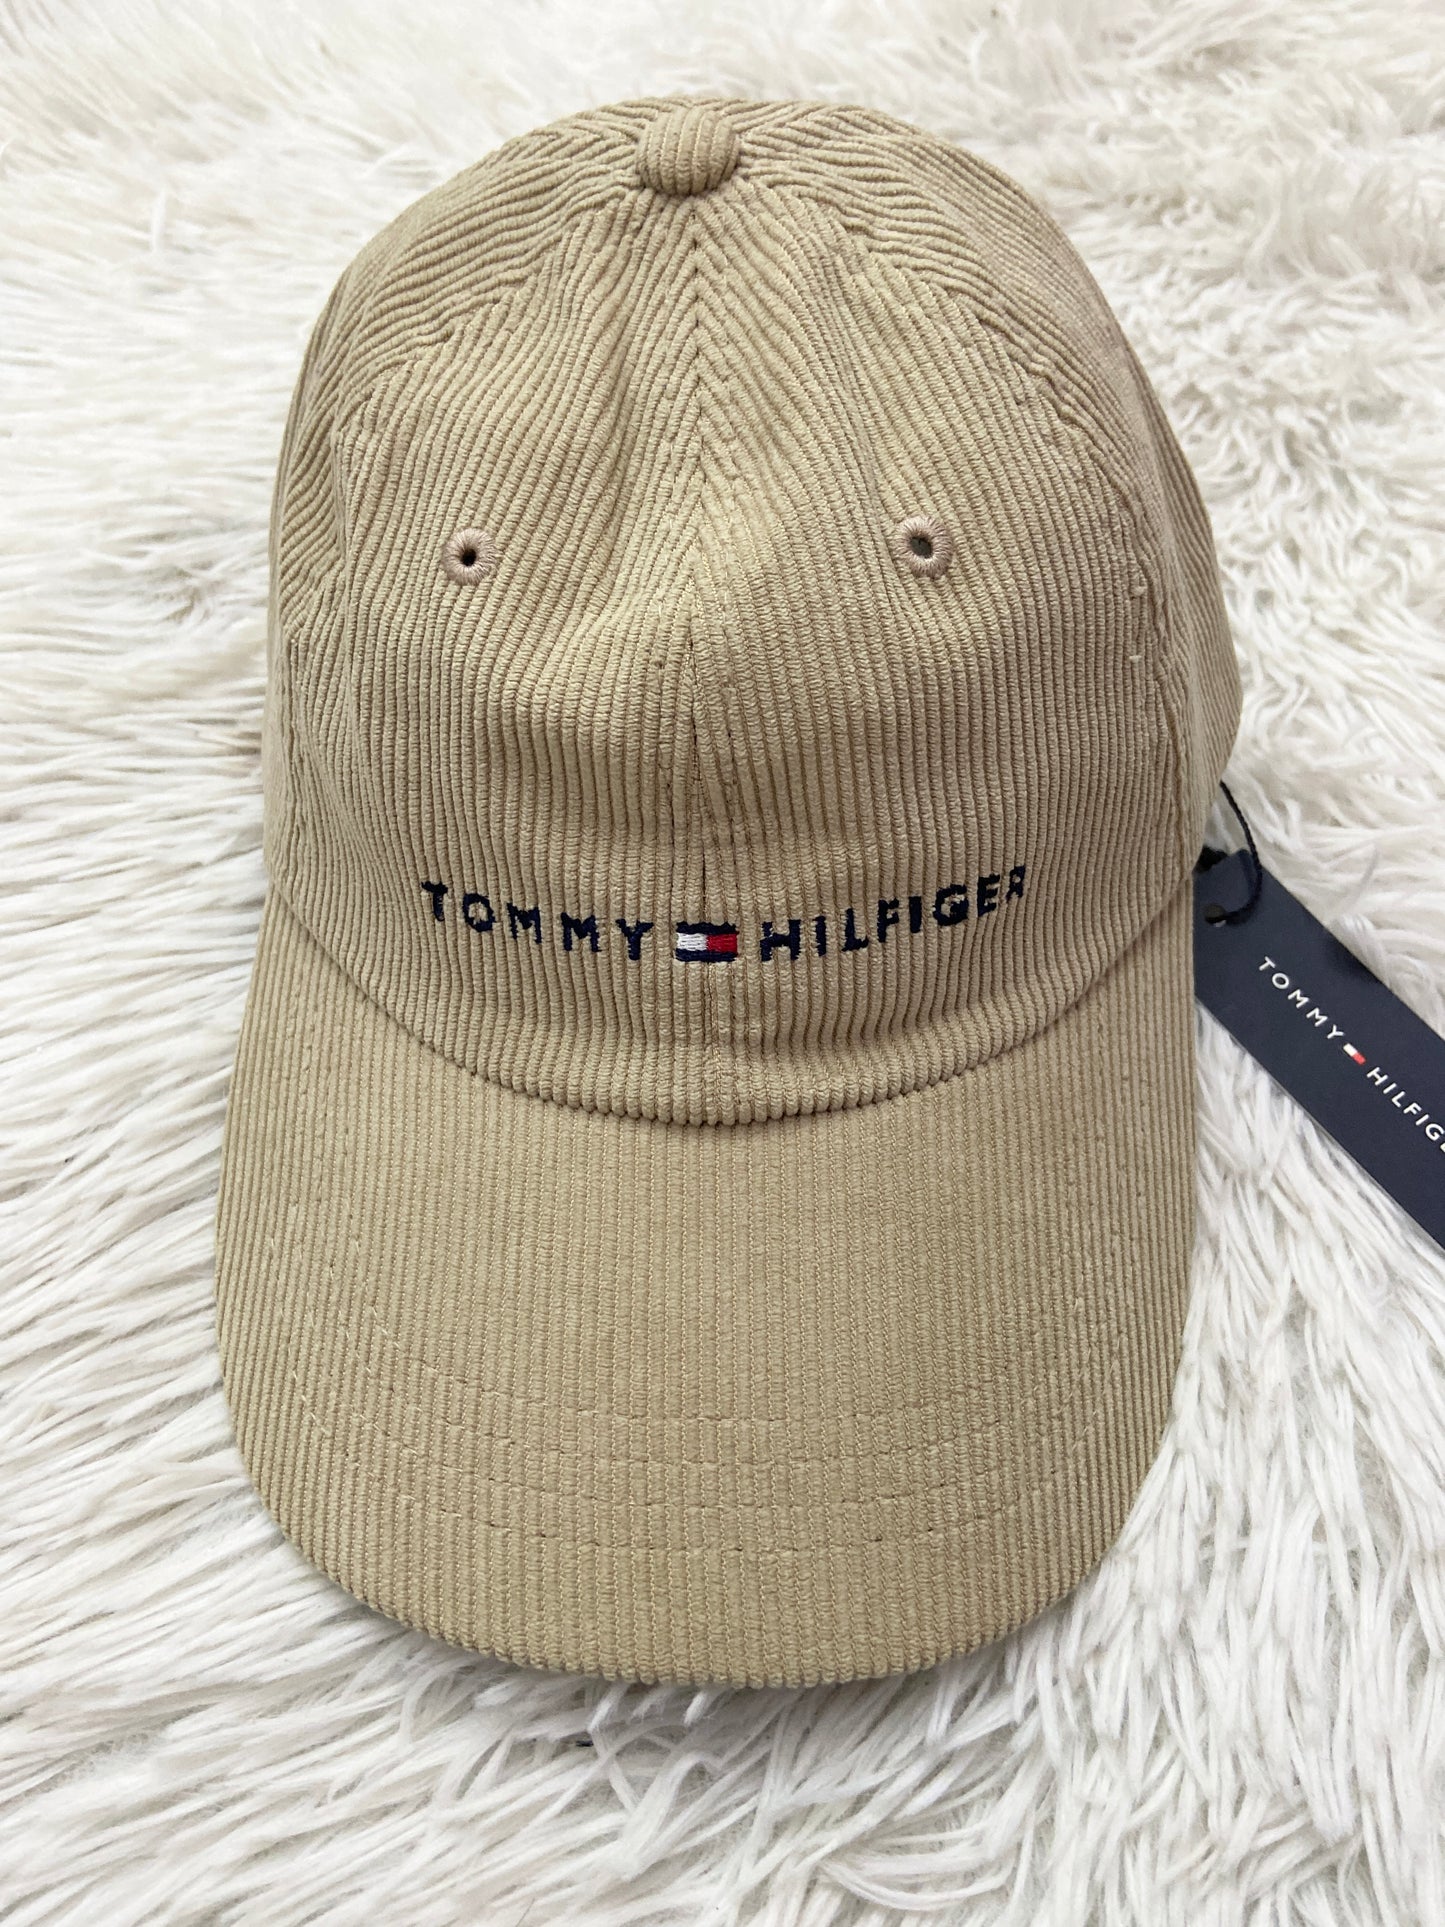 Gorra Tommy Hilfiger original crema opaco, en pana y letras TOMMY HILFIGER en azul marino.